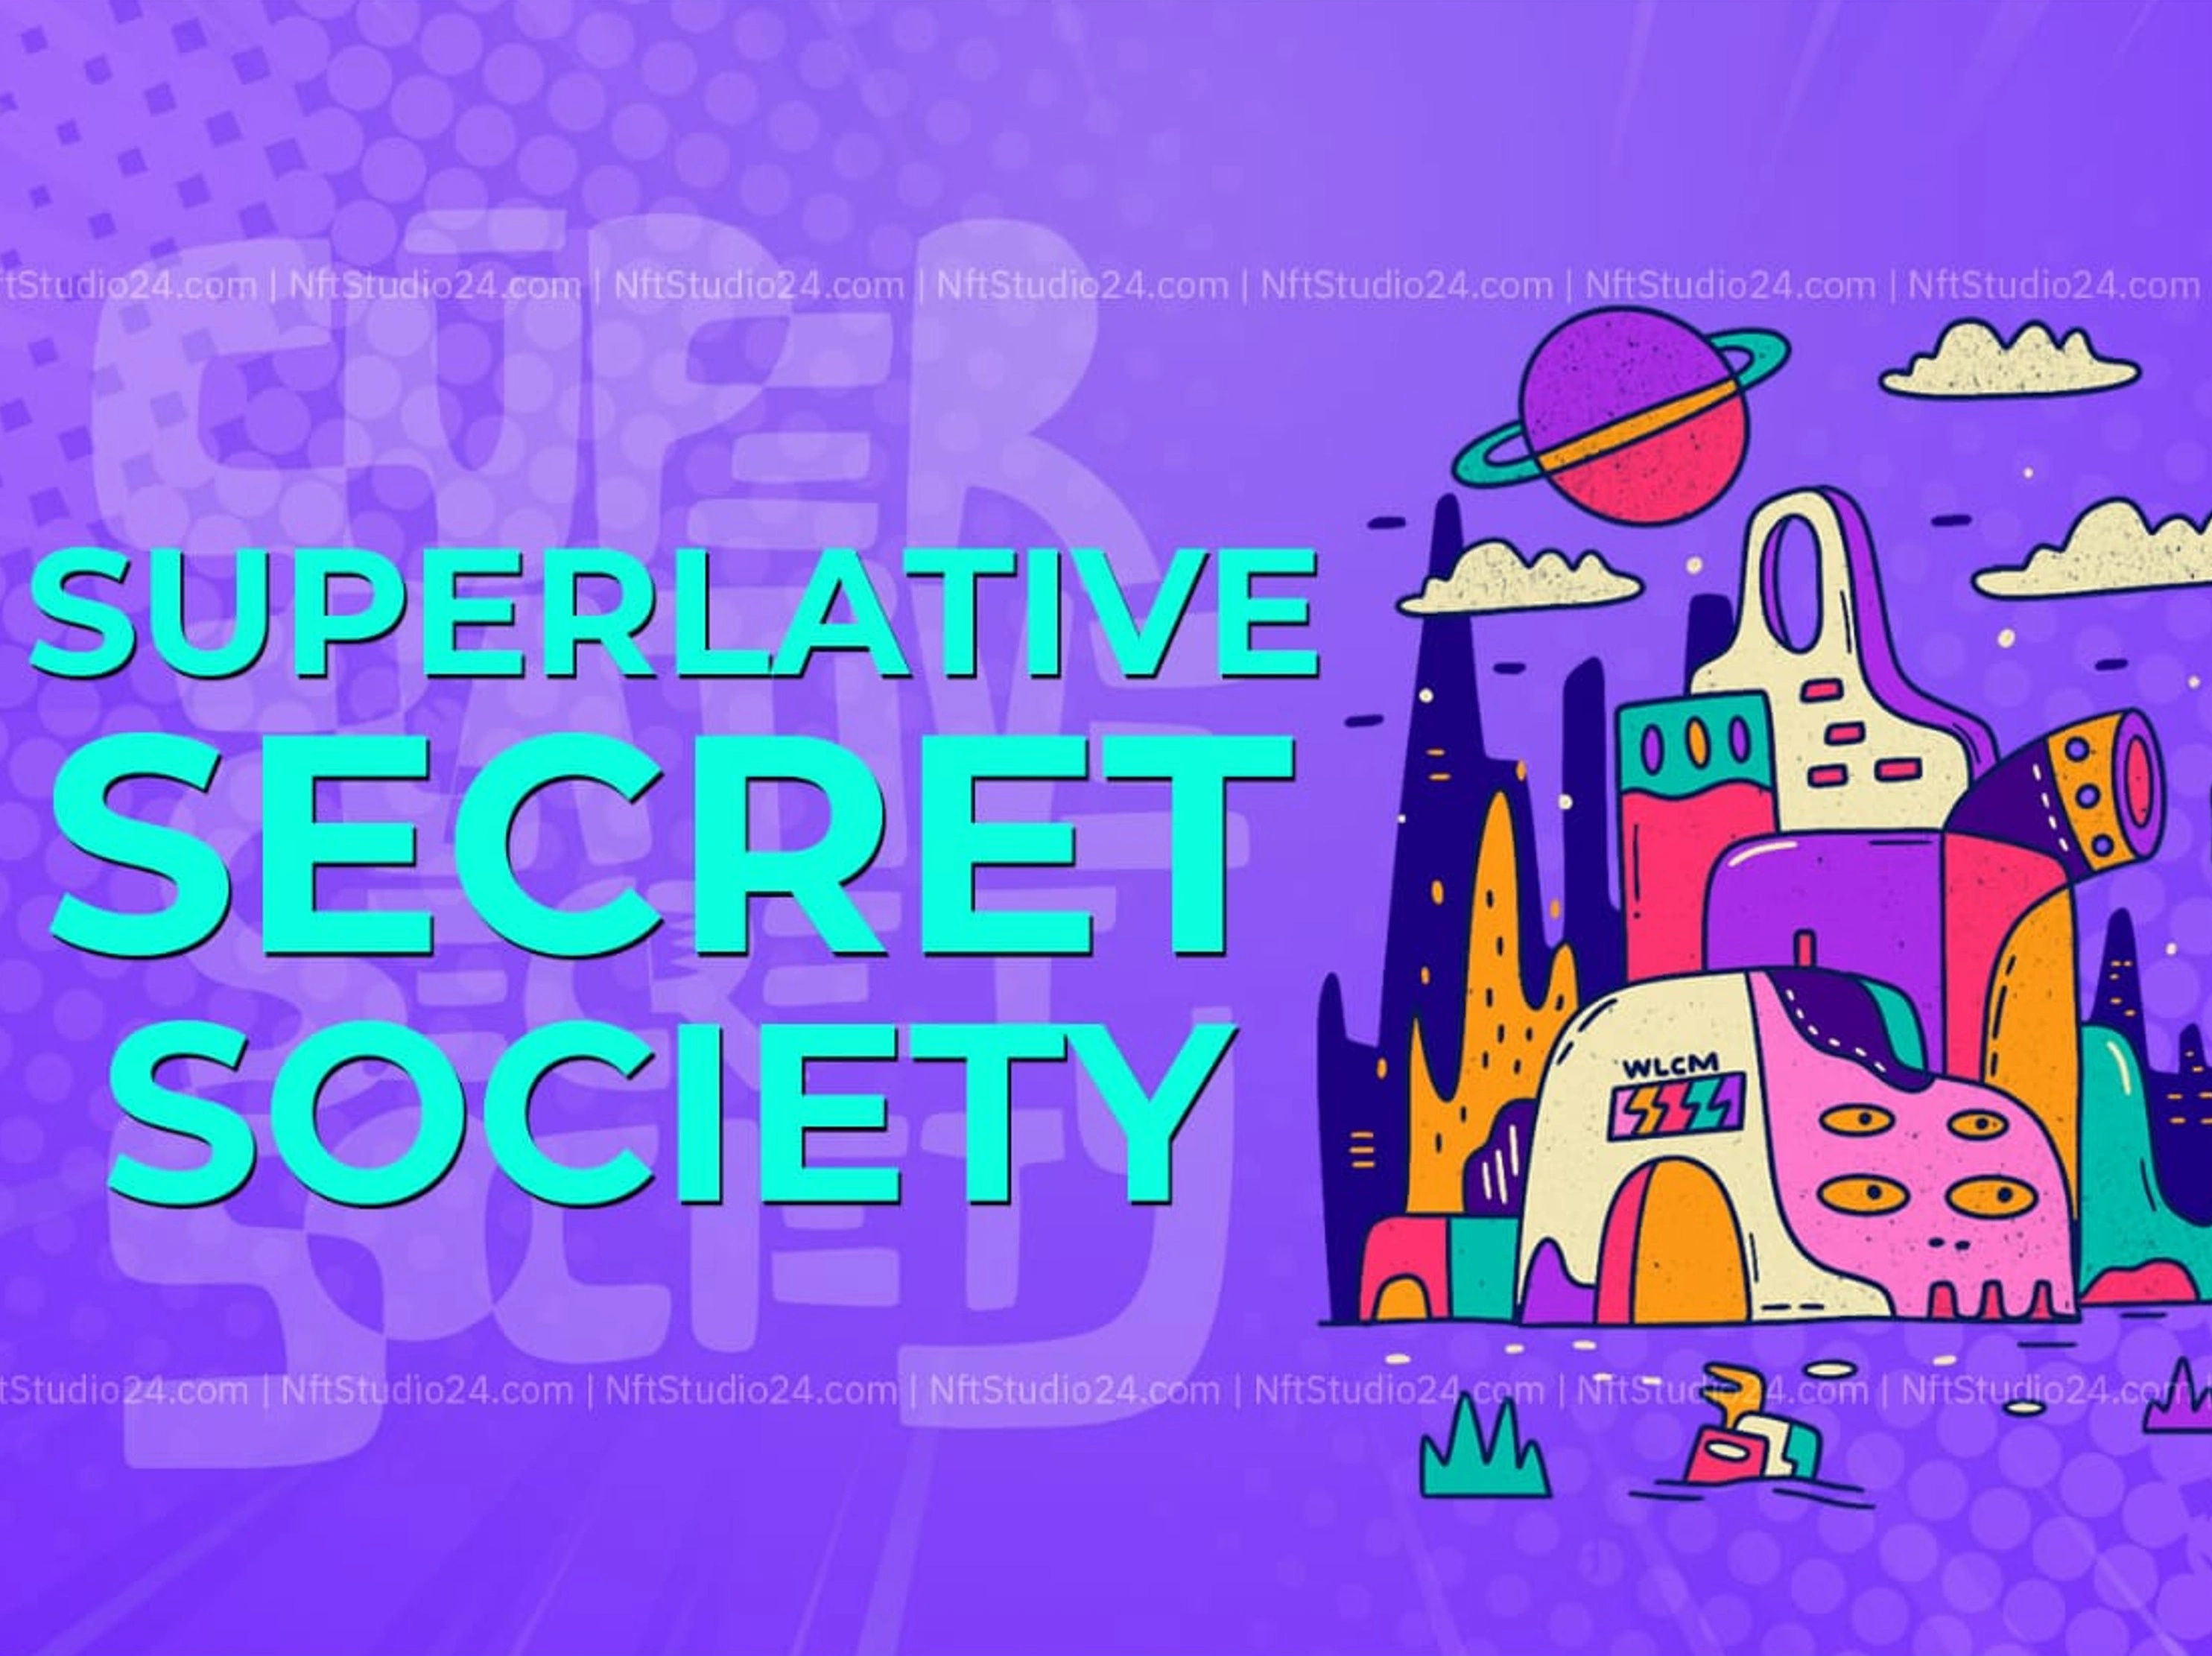 Superlative Secret Society